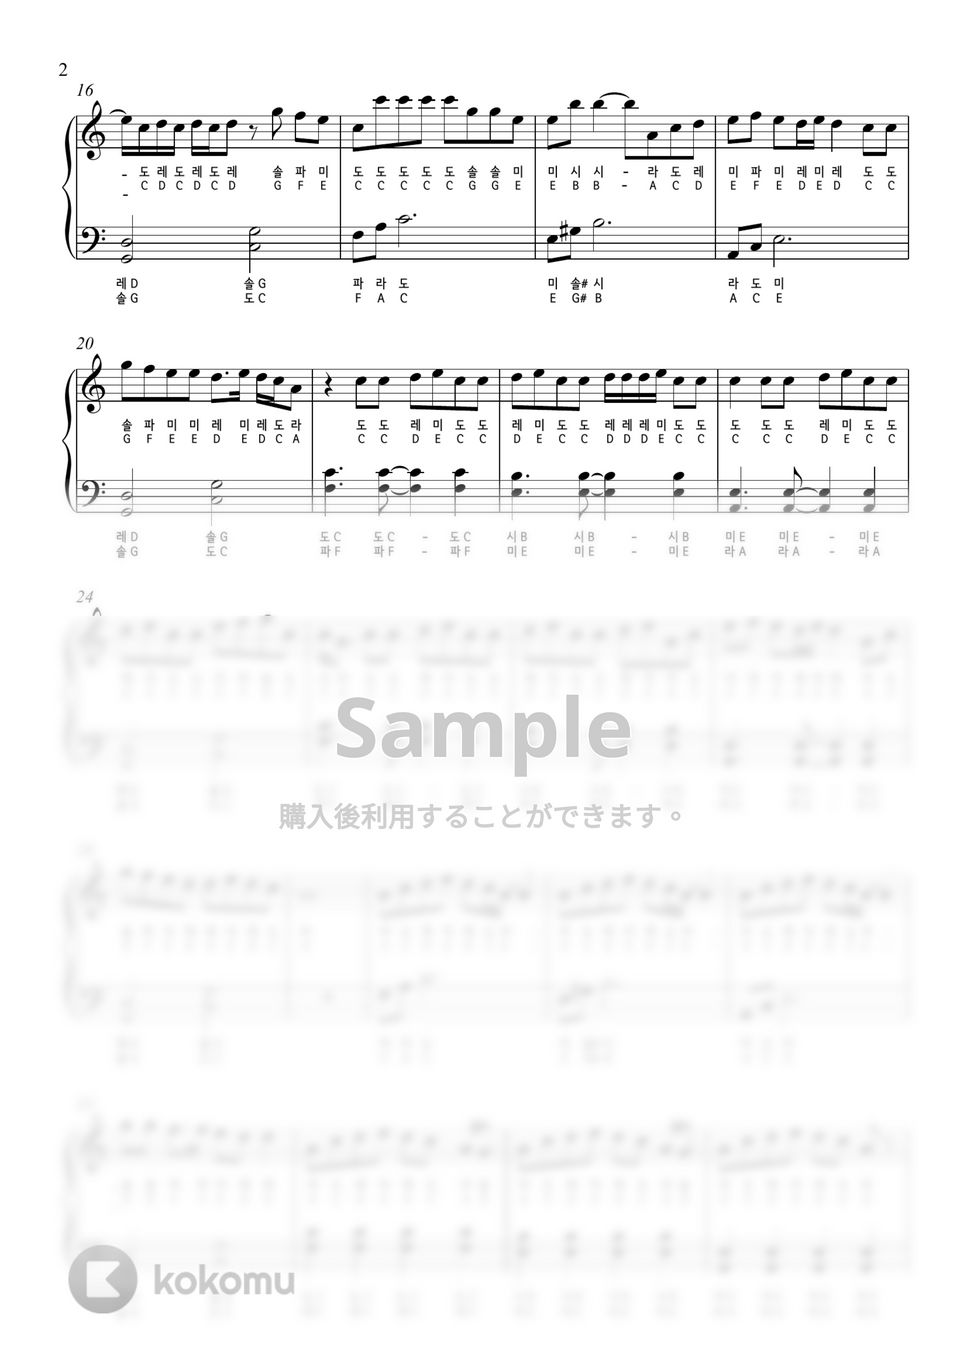 ジョングク (BTS) - Seven (with pitch names) by PianoSwift